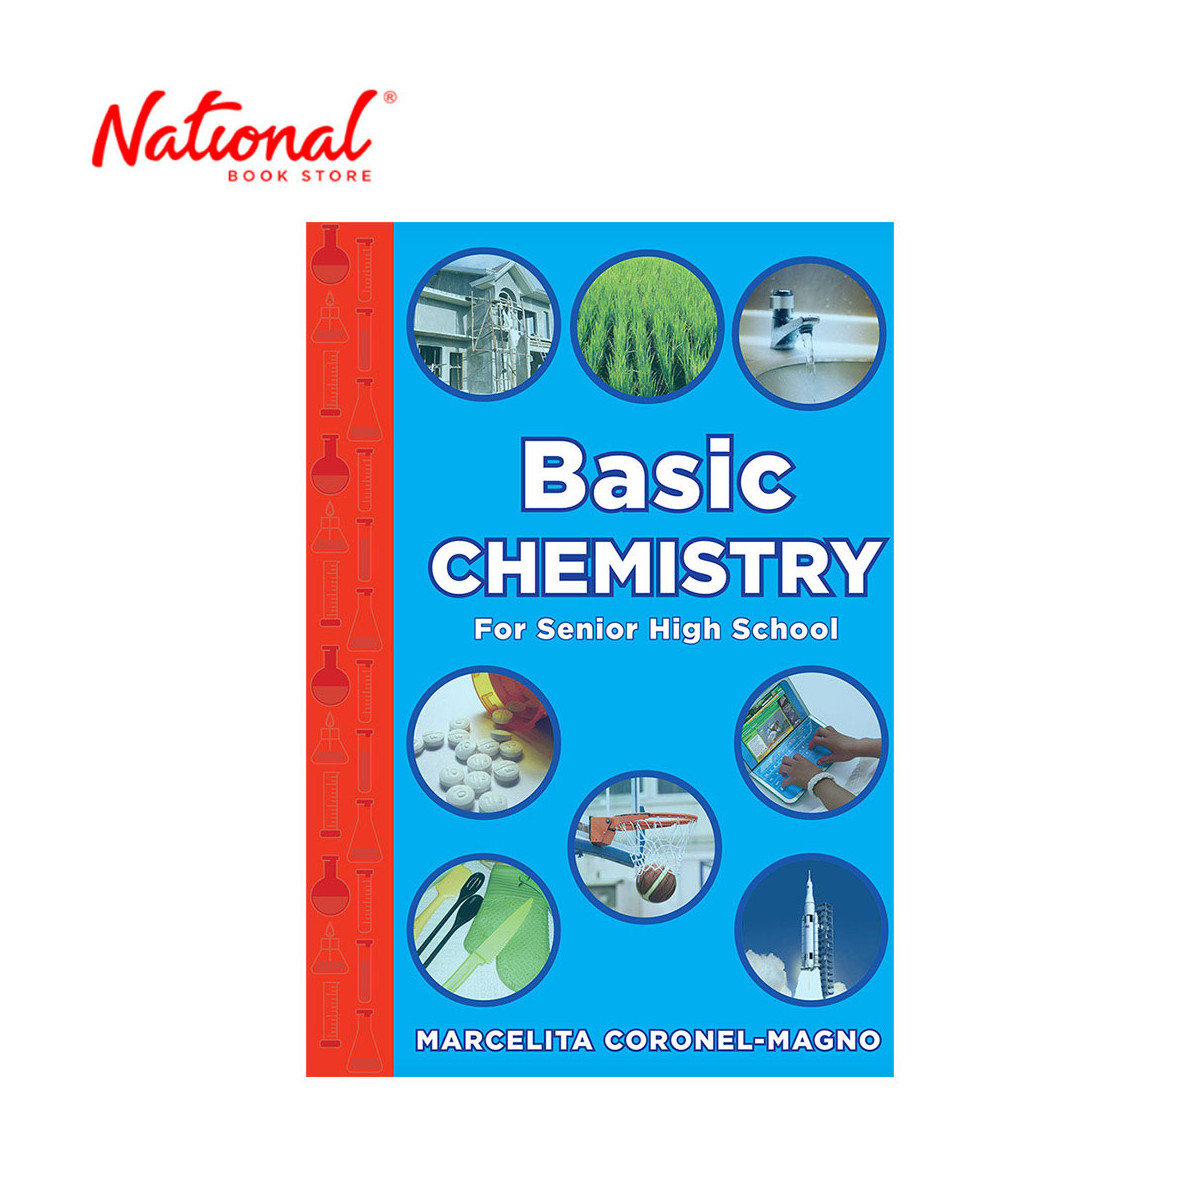 Basic Chemistry for Senior High School by Marcelita Coronel-Magno - Trade Paperback - Senior High